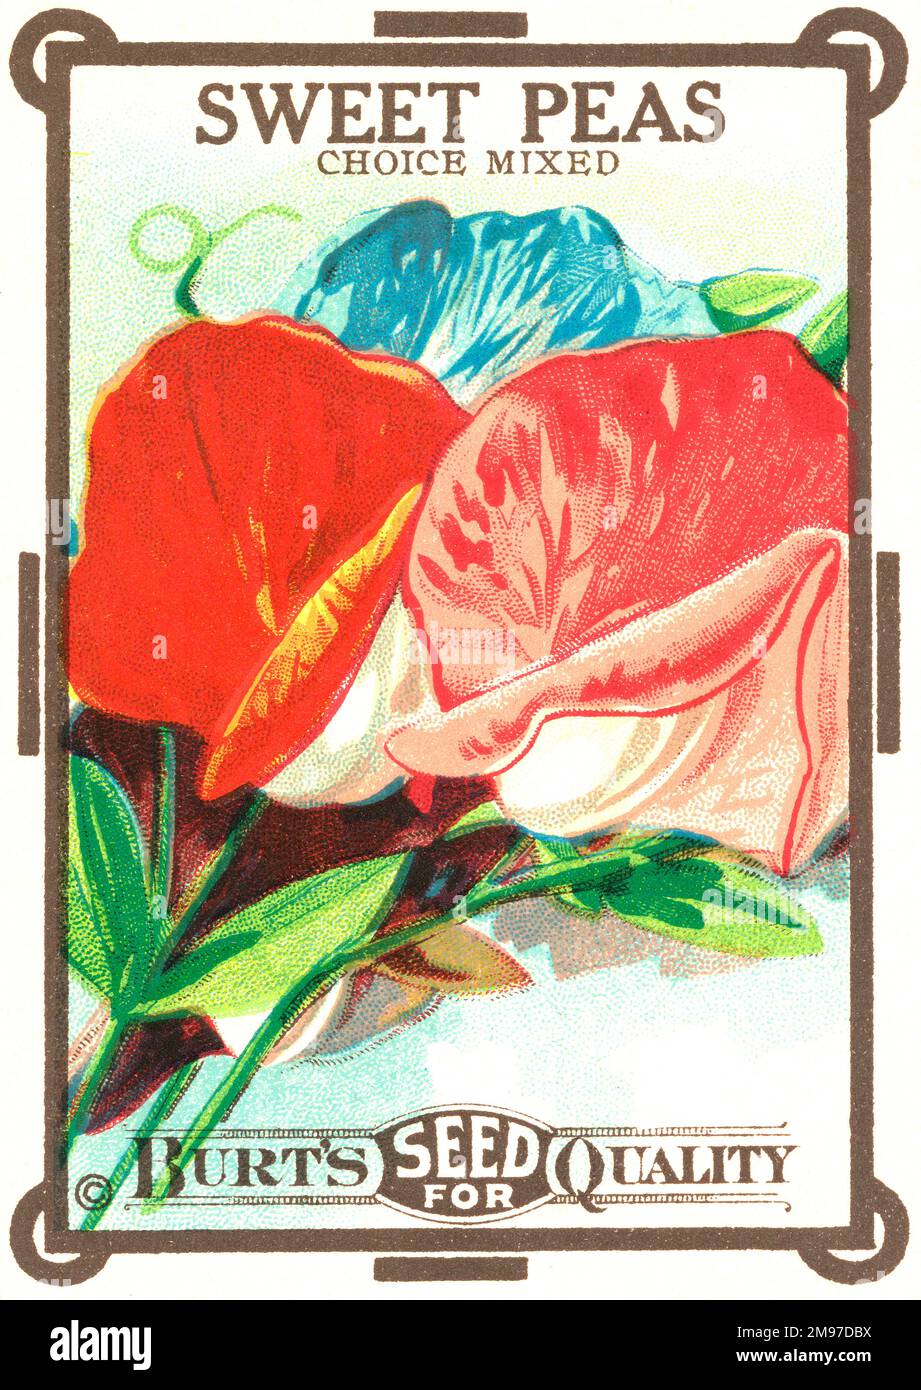 Un bel pacchetto di semi di Sweetpea della Burt’s Seeds Company, New York. Foto Stock